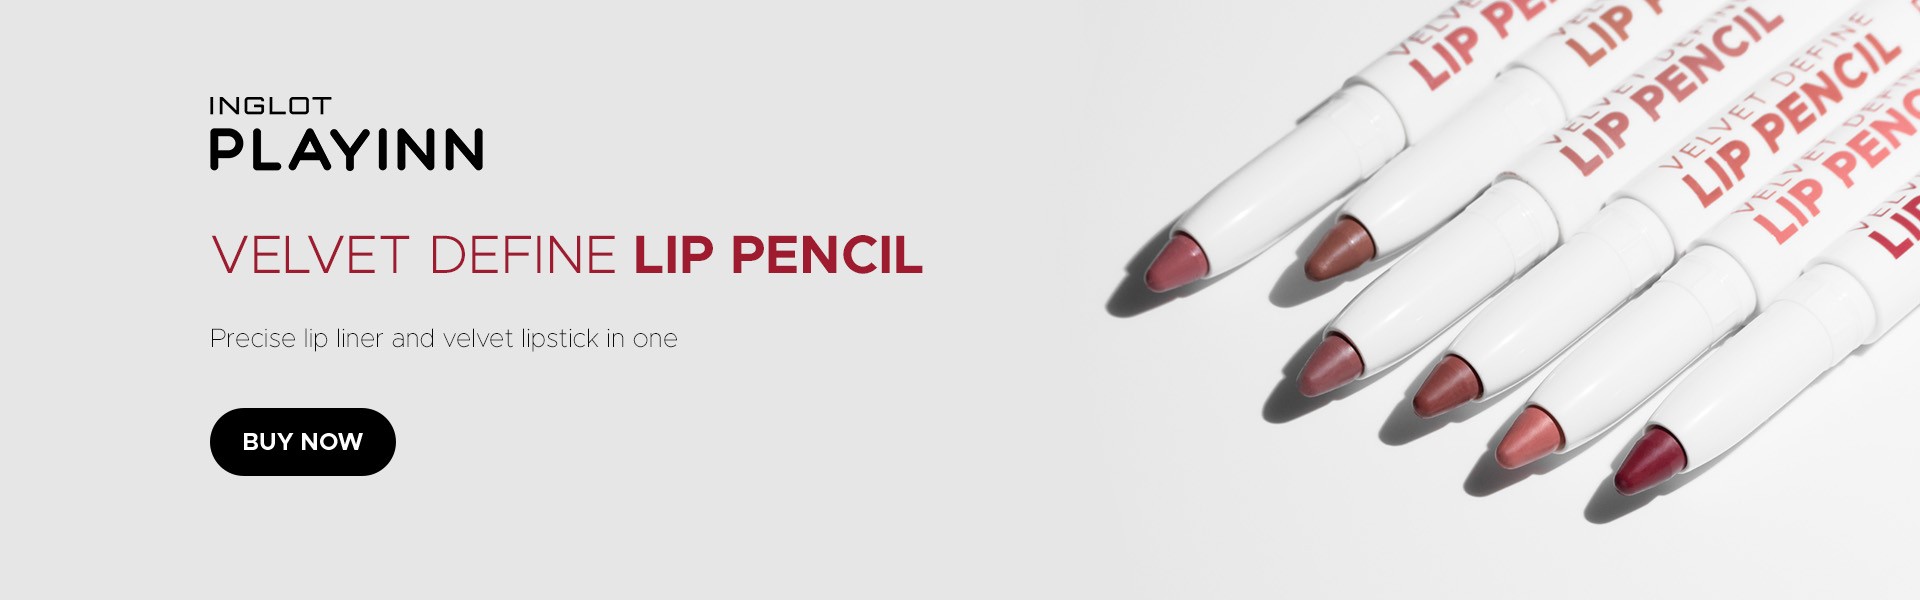 INGLOT PLAYINN Velvet Define Lip Pencil